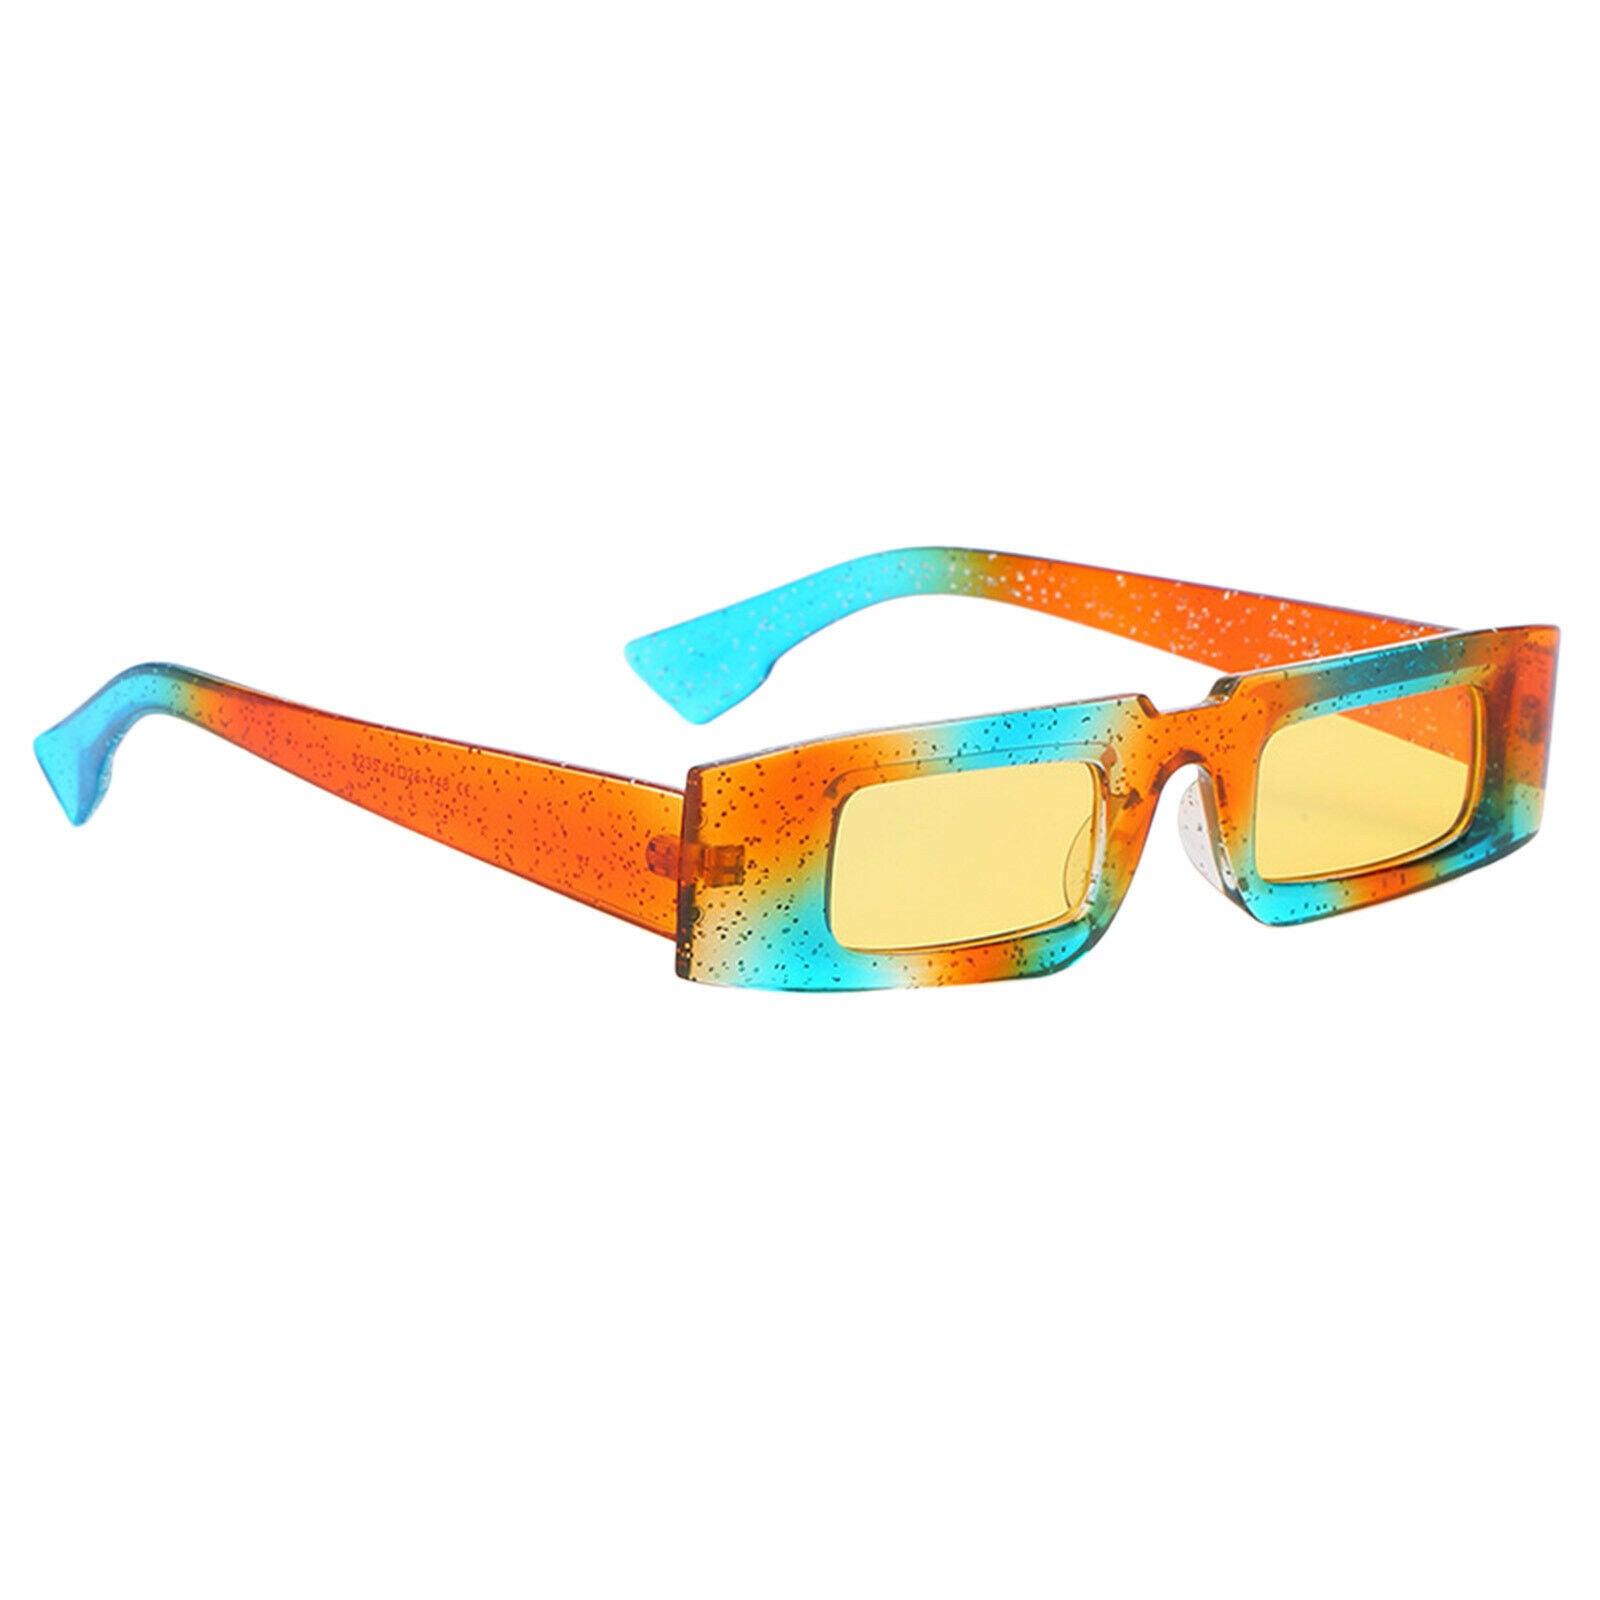 Classic Fashion Rectangle Sunglasses Women Men Glasses Beach Accessories